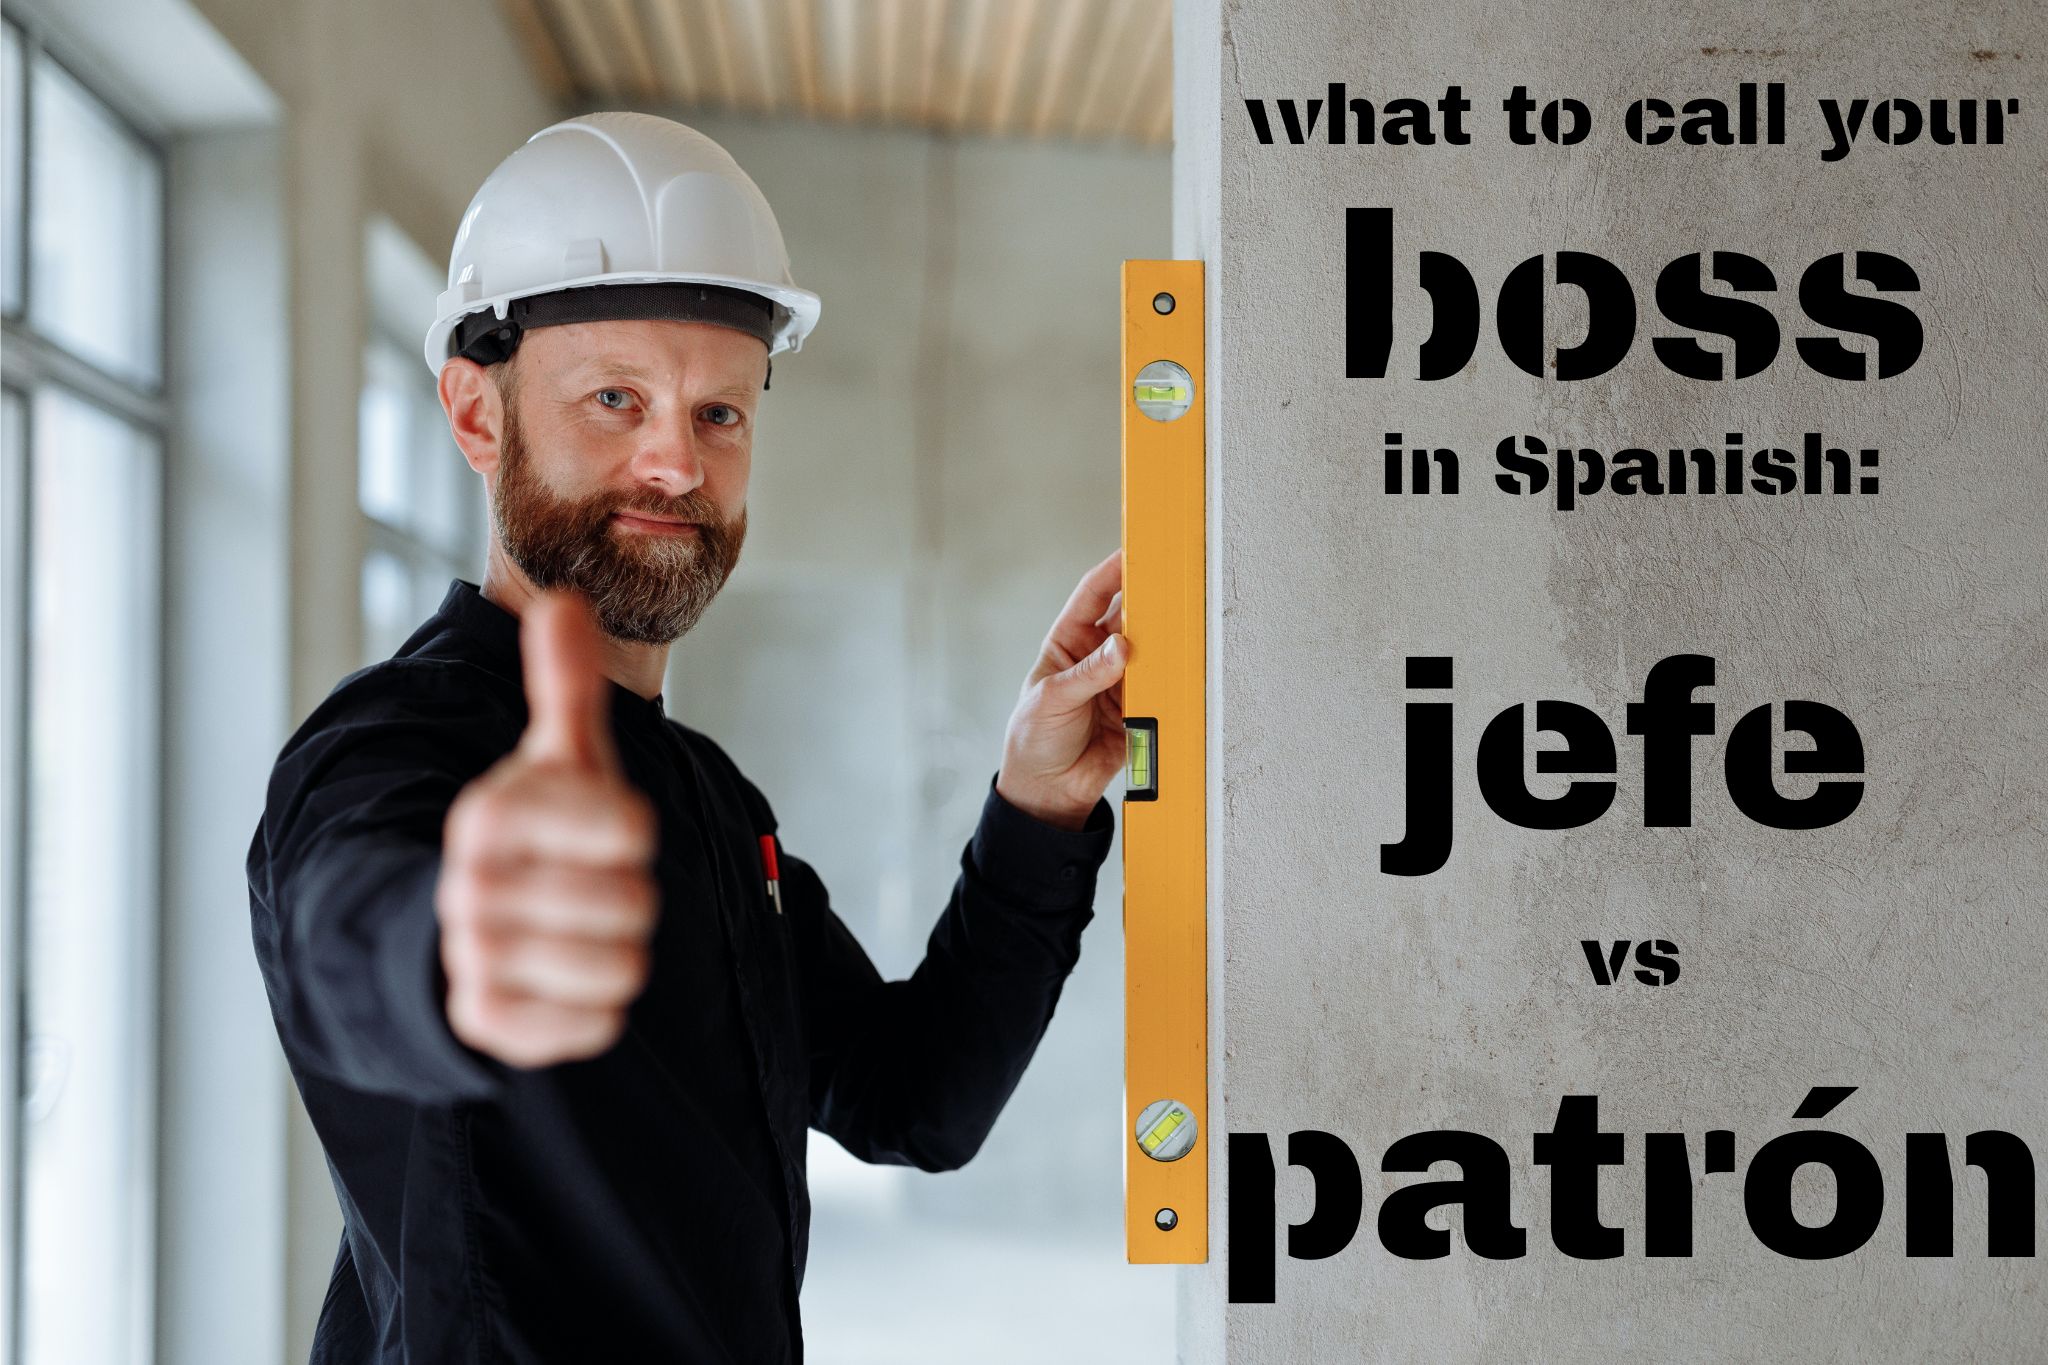 Boss in Spanish: Jefe vs Patrón